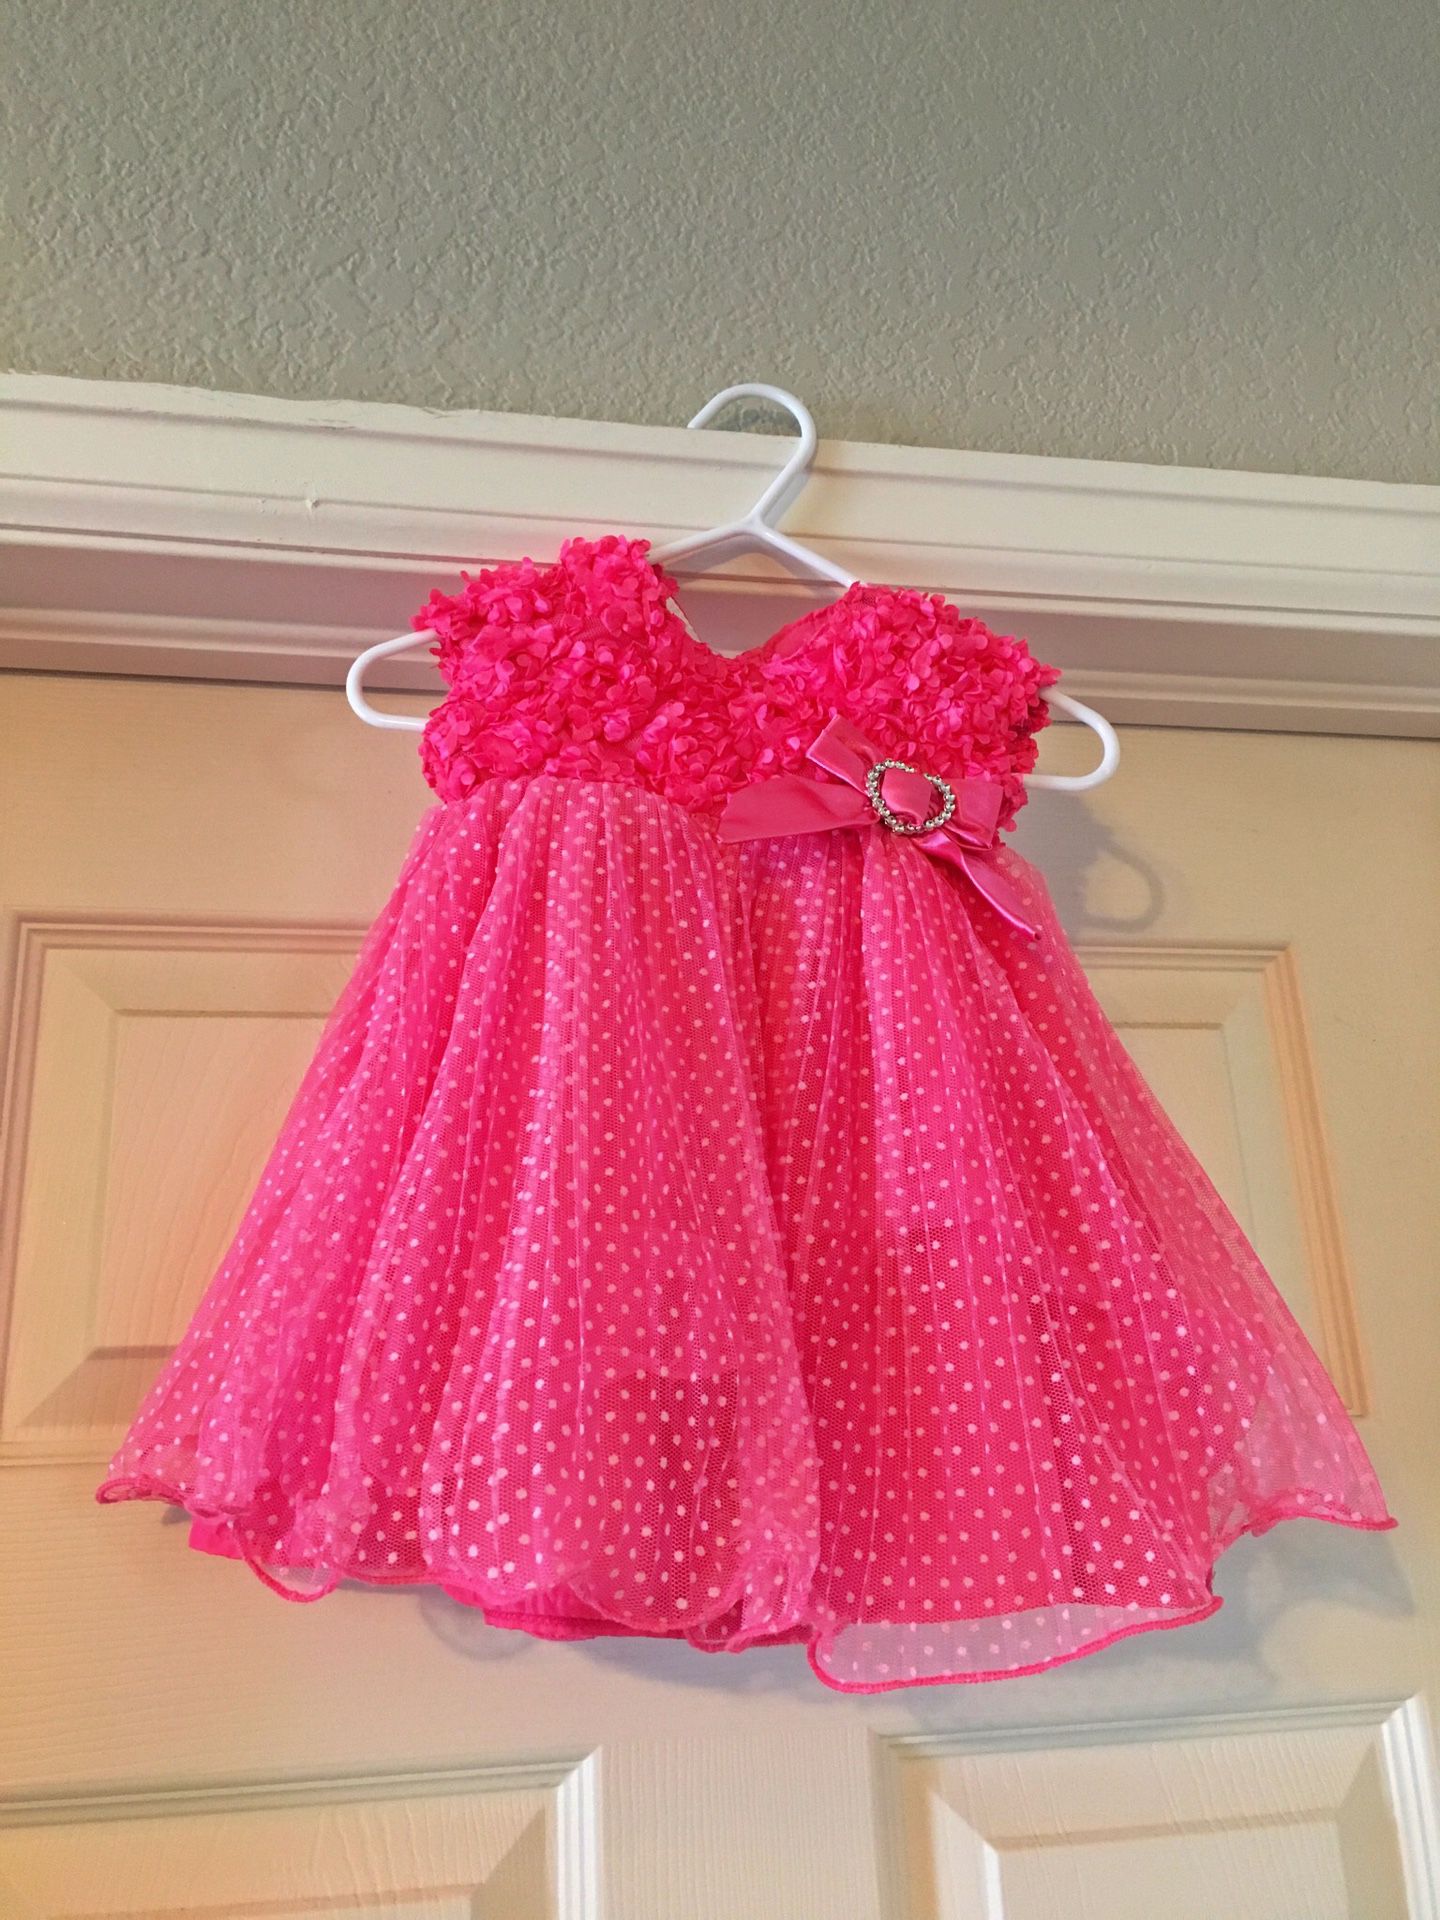 Infant pink dress